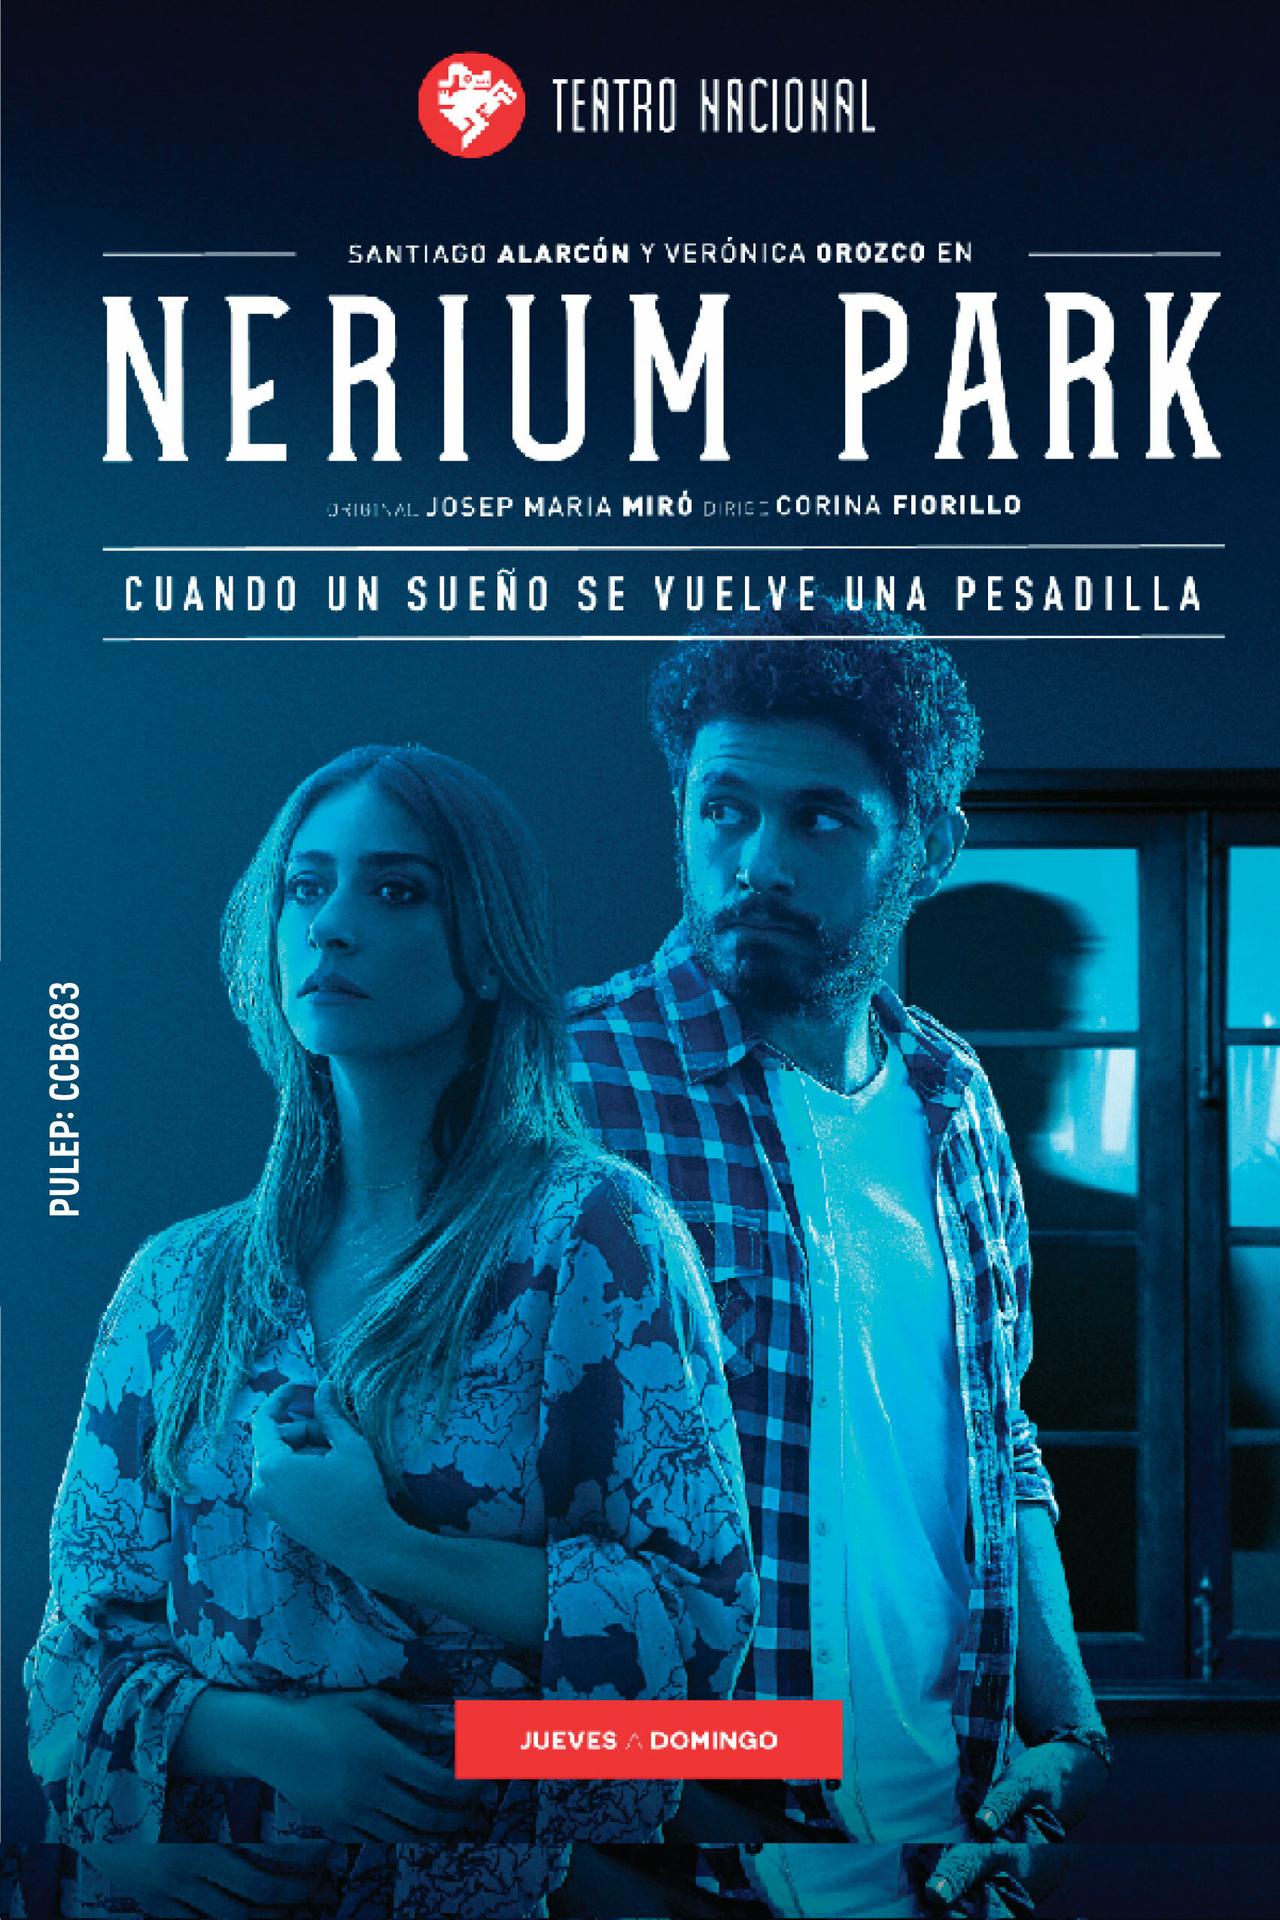 Nerium Park